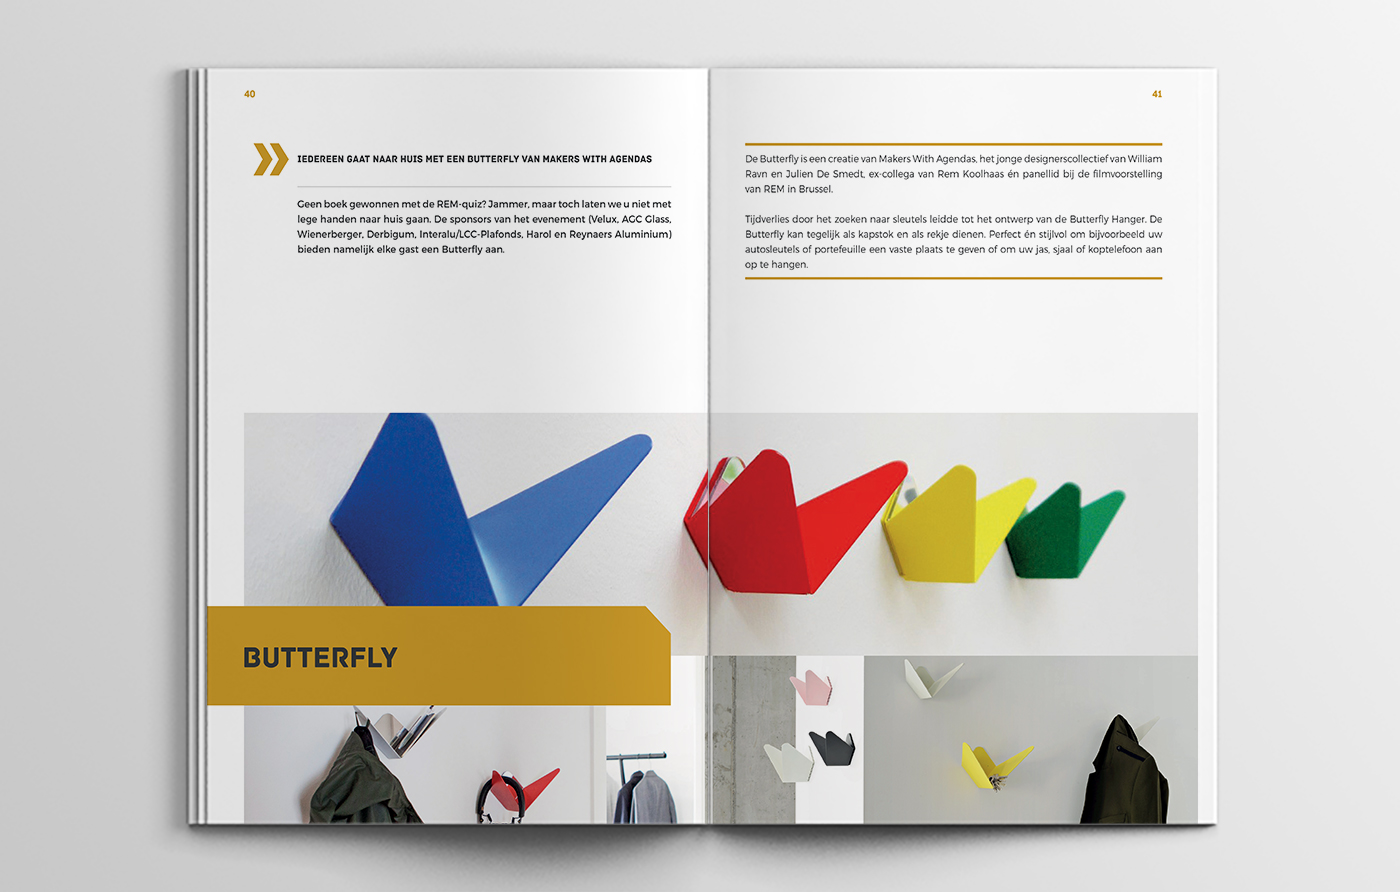 Snedig-grafisch-ontwerp-magazine-architectura